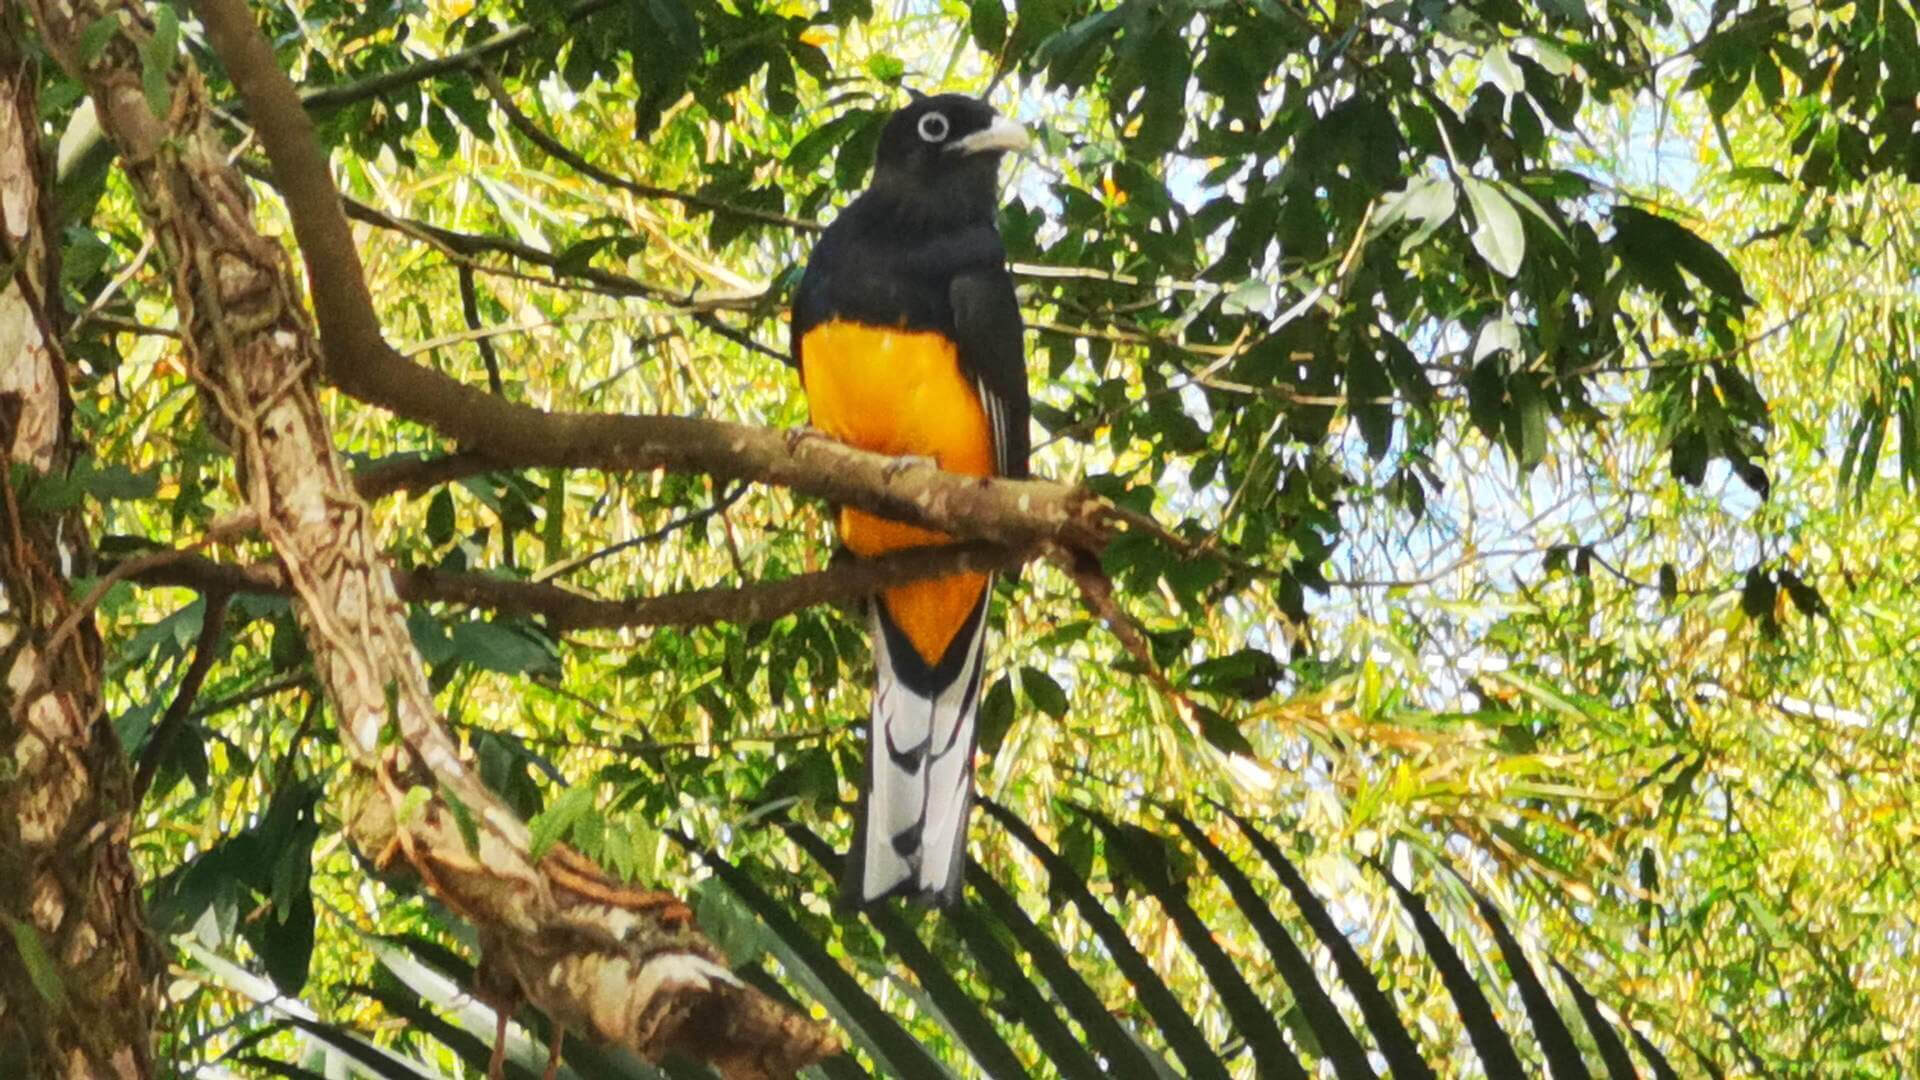 Fotografia de um pássaro com plumagem preta e laranja brilhante, posado em um galho com folhagem verde ao fundo, demonstrando a biodiversidade de uma região.